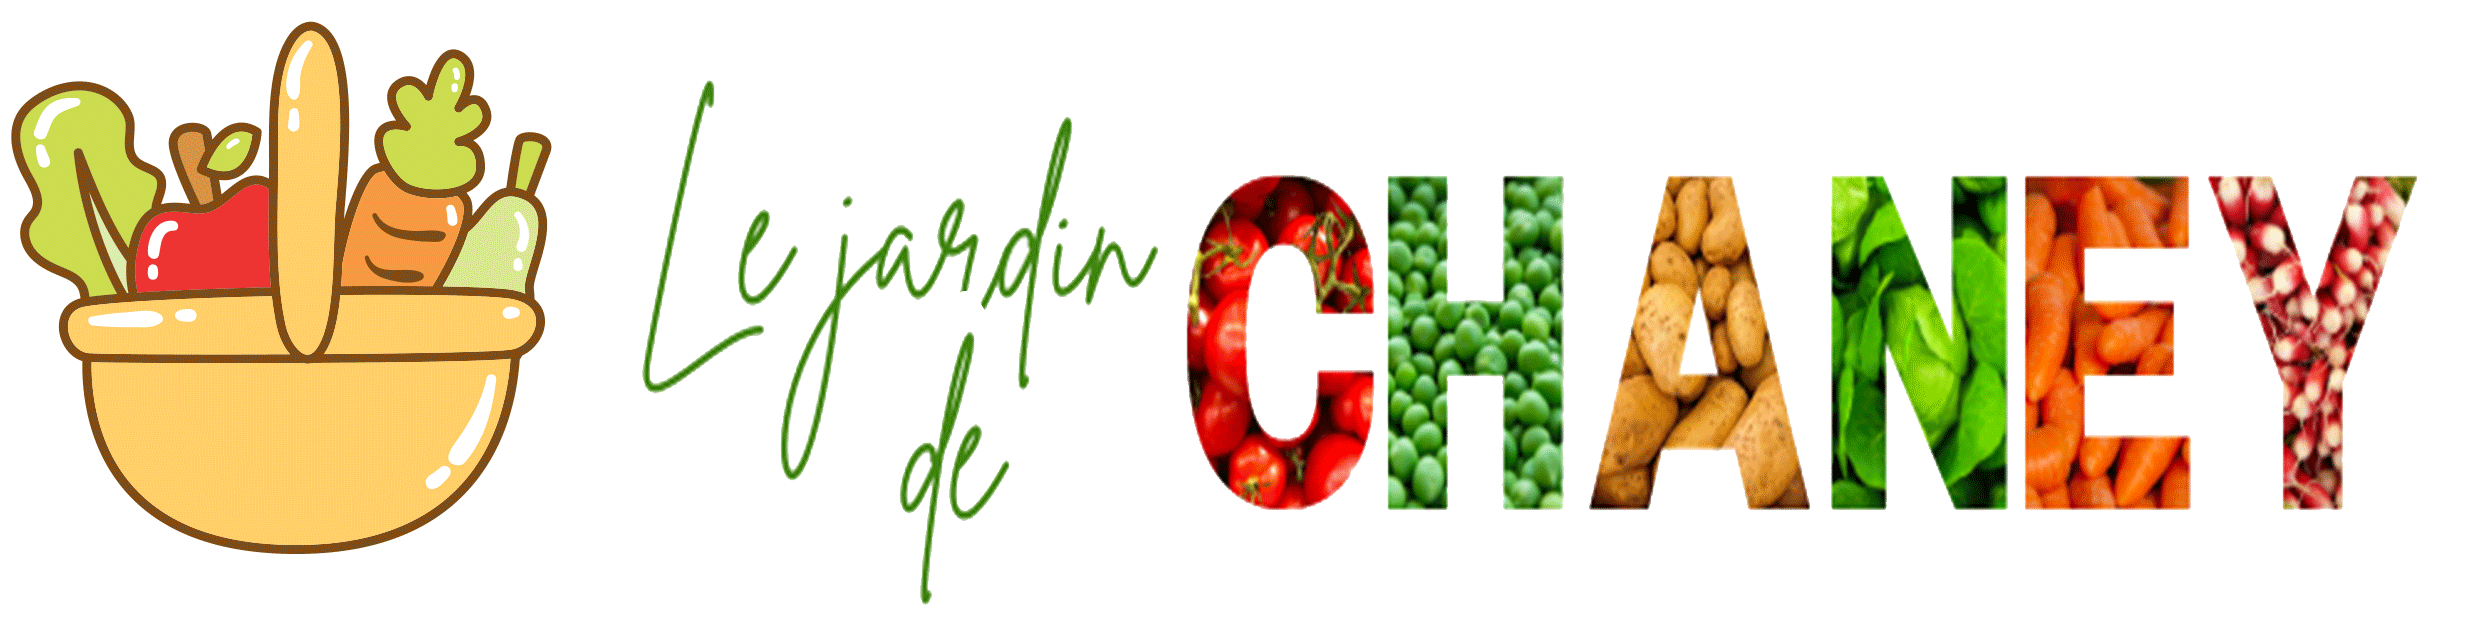 Jardin de Chaney - Acheter des légumes frais et locaux à saint étienne - LE JARDIN DE CHANEY FETE SES 1 AN !